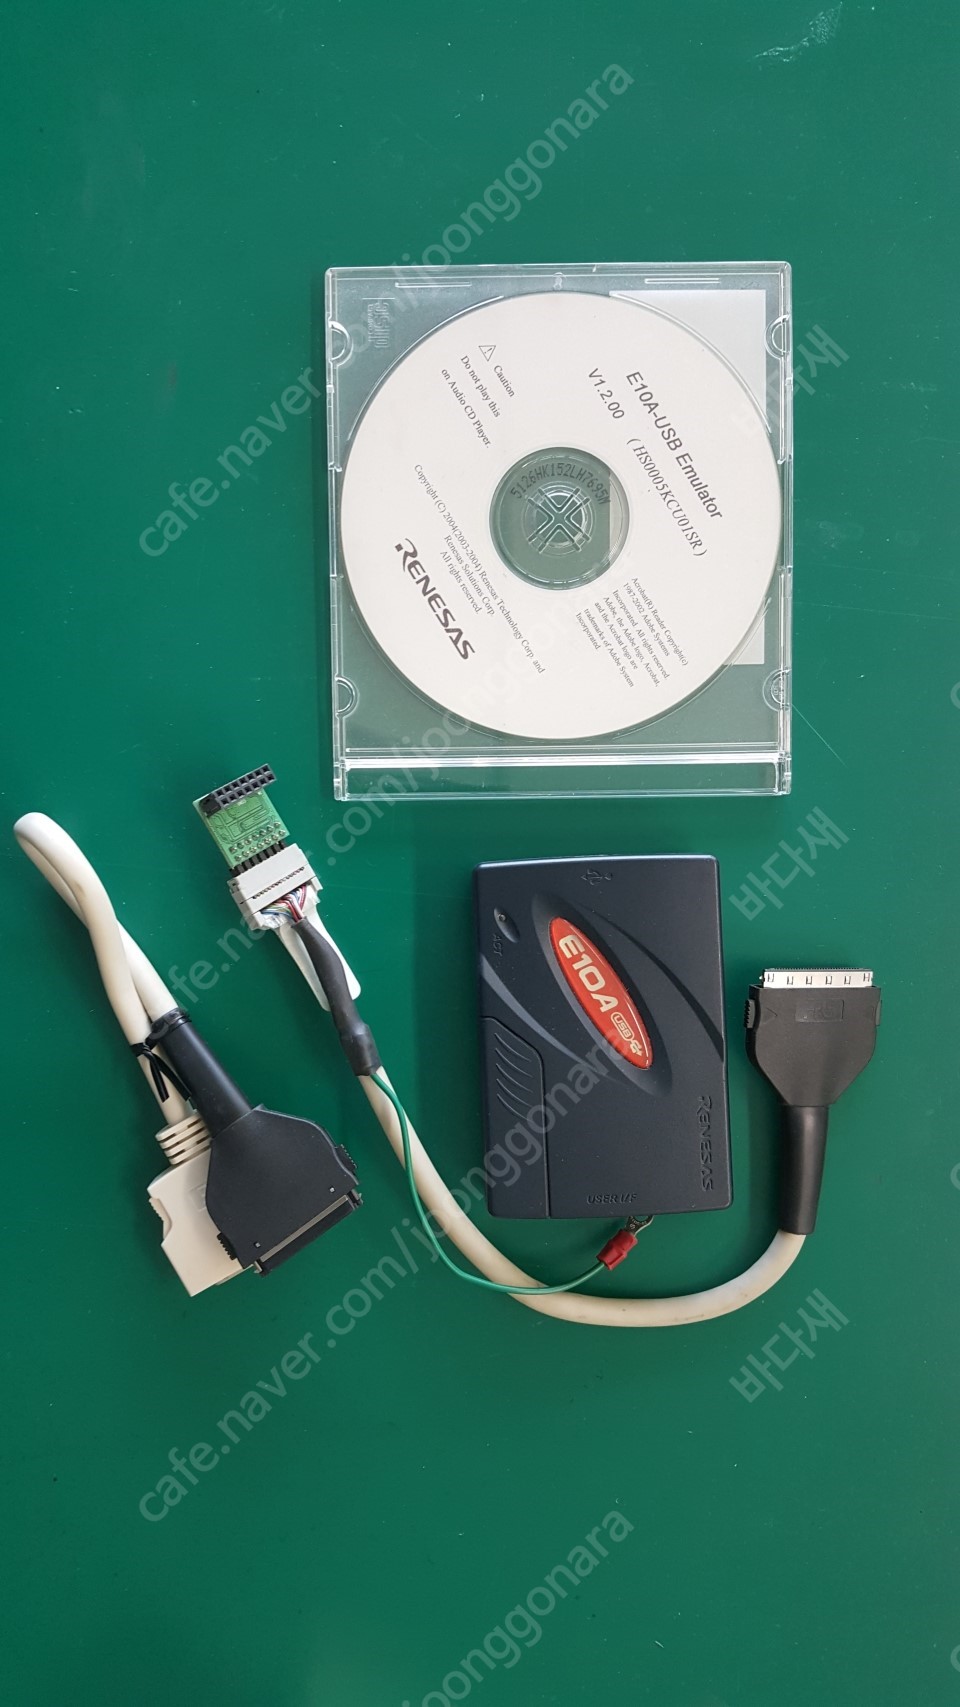 르네사스 E10A-usb emulator HS0005KCU02H 판매